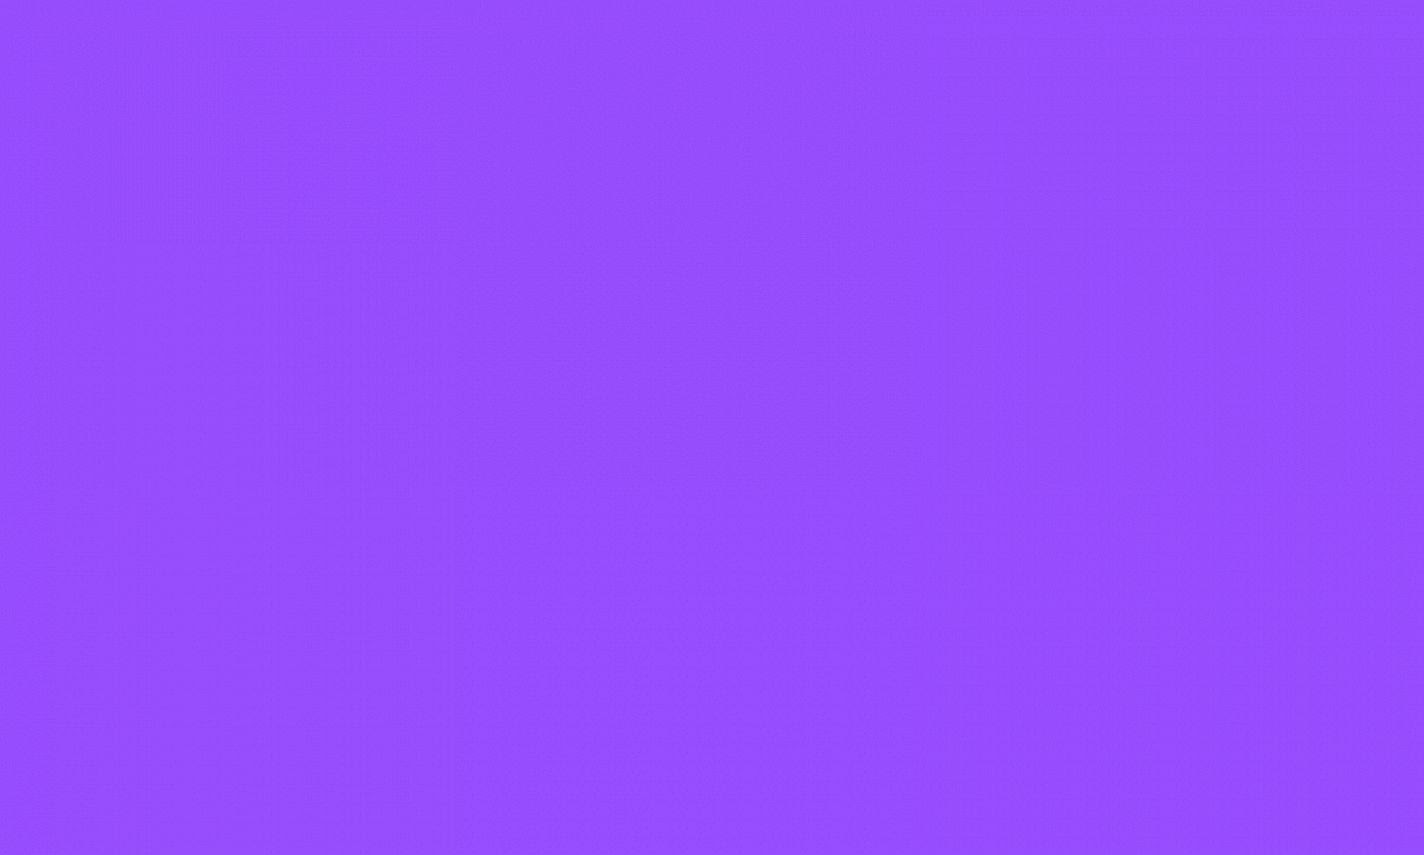 Dark Solid Purple Wallpaper - Wallpapersafari